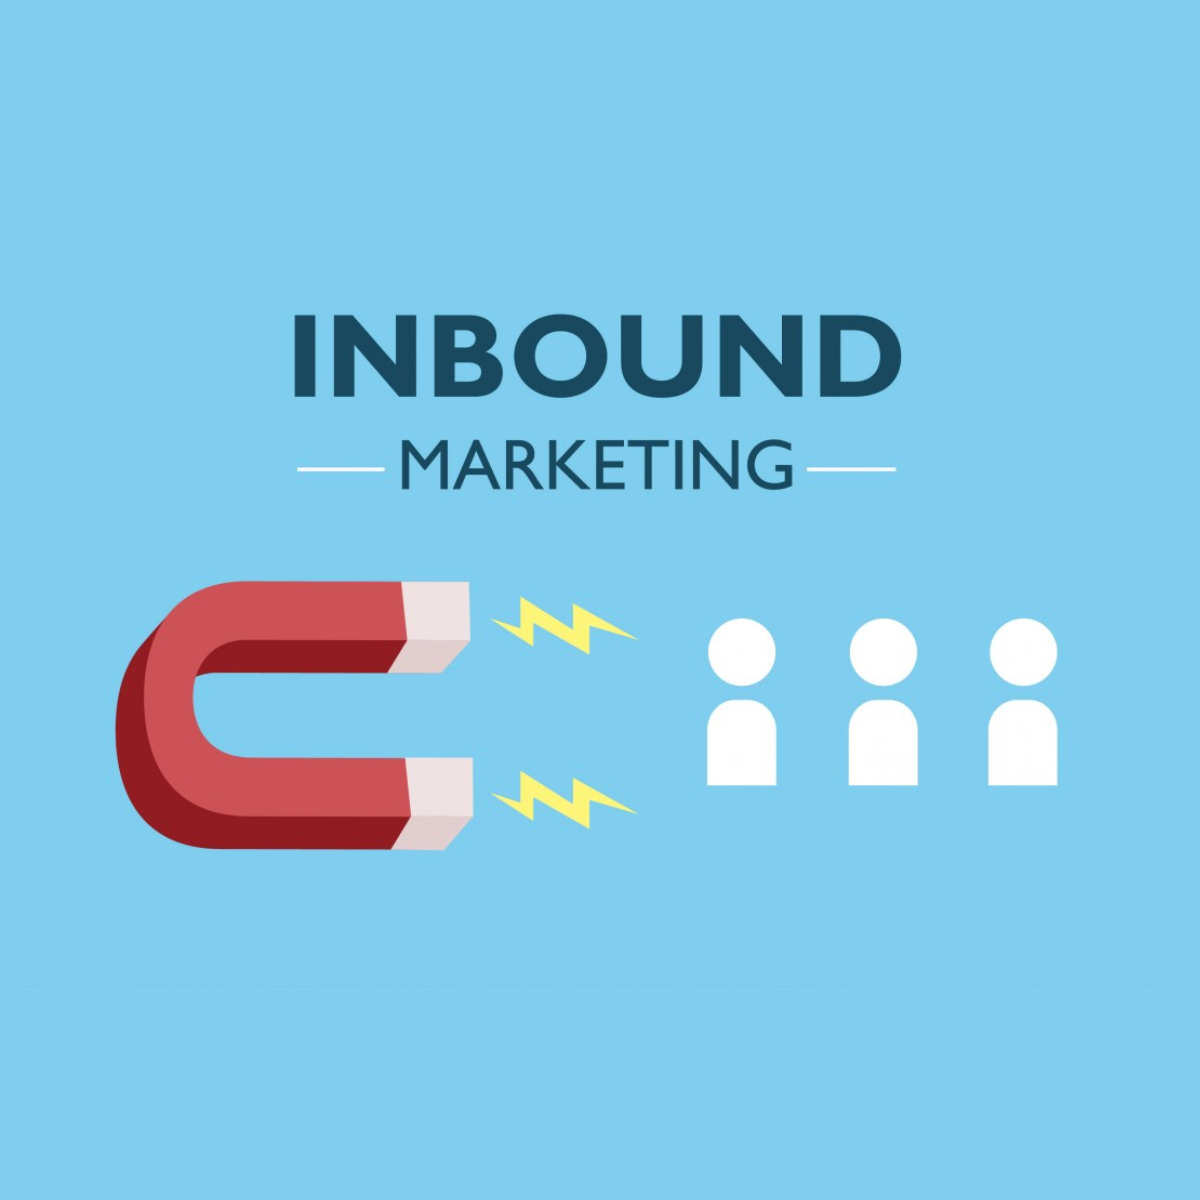 Como fazer Inbound Marketing?